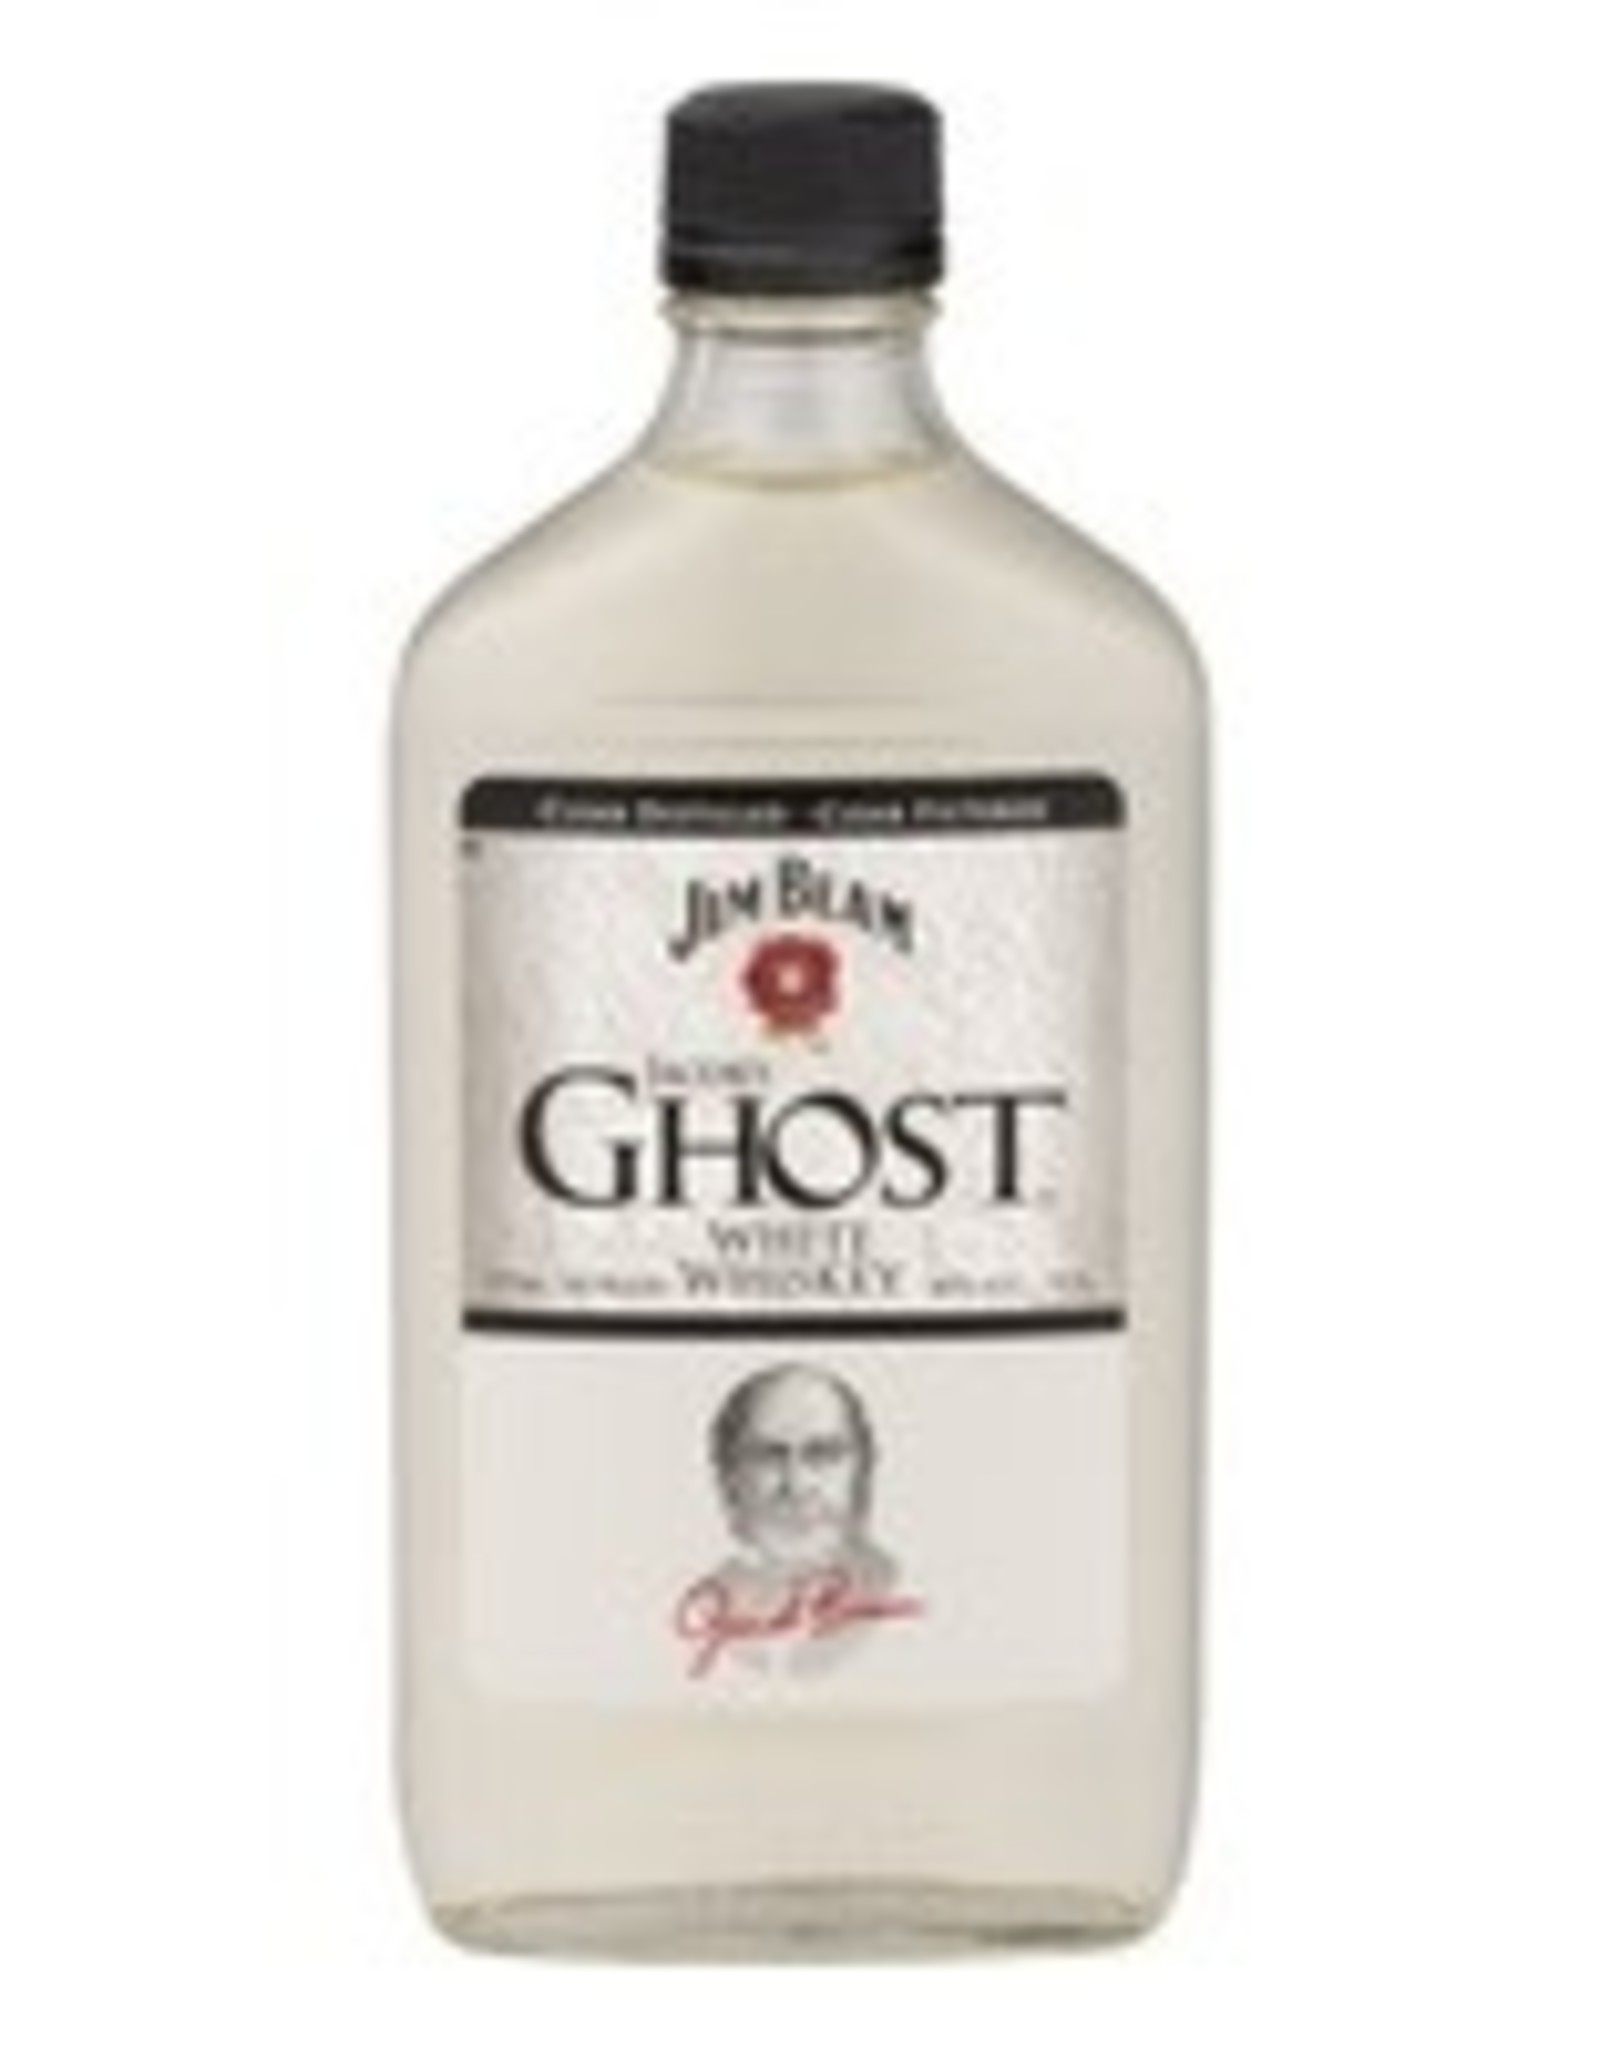 Jim Beam Jim Beam Ghost Bourbon